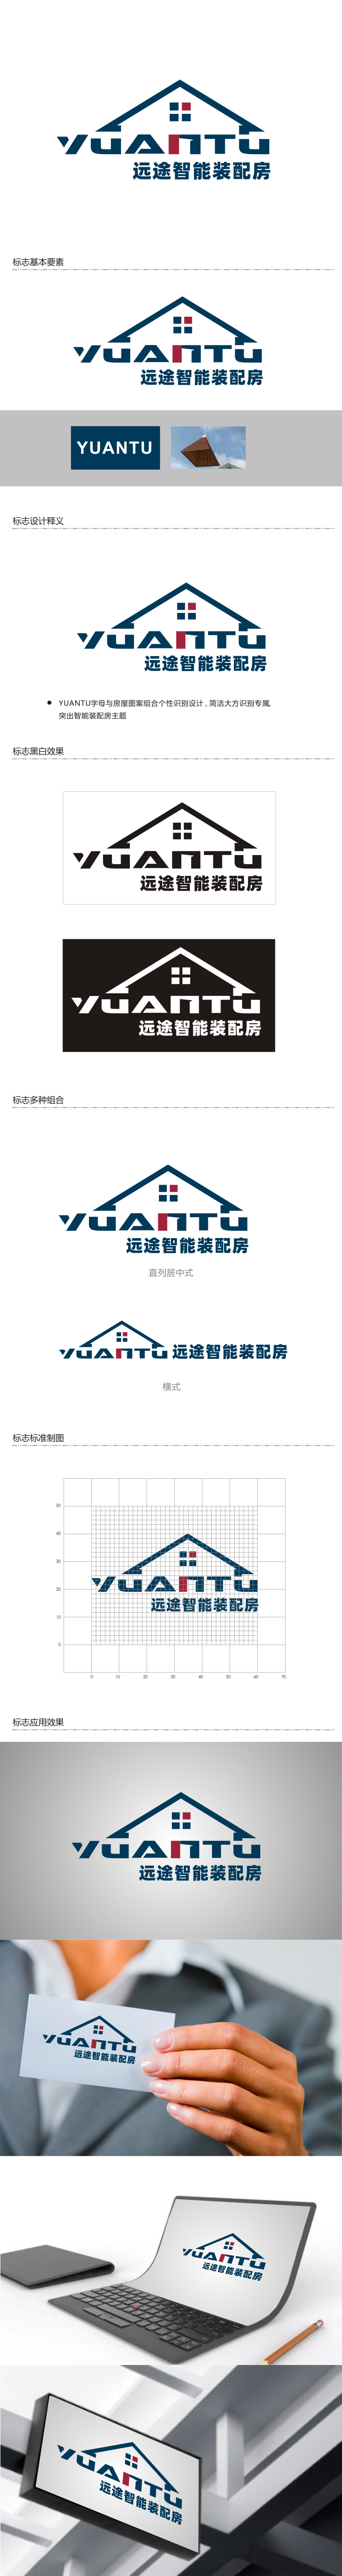 姜彦海的江苏远途智能装配房有限公司logo设计